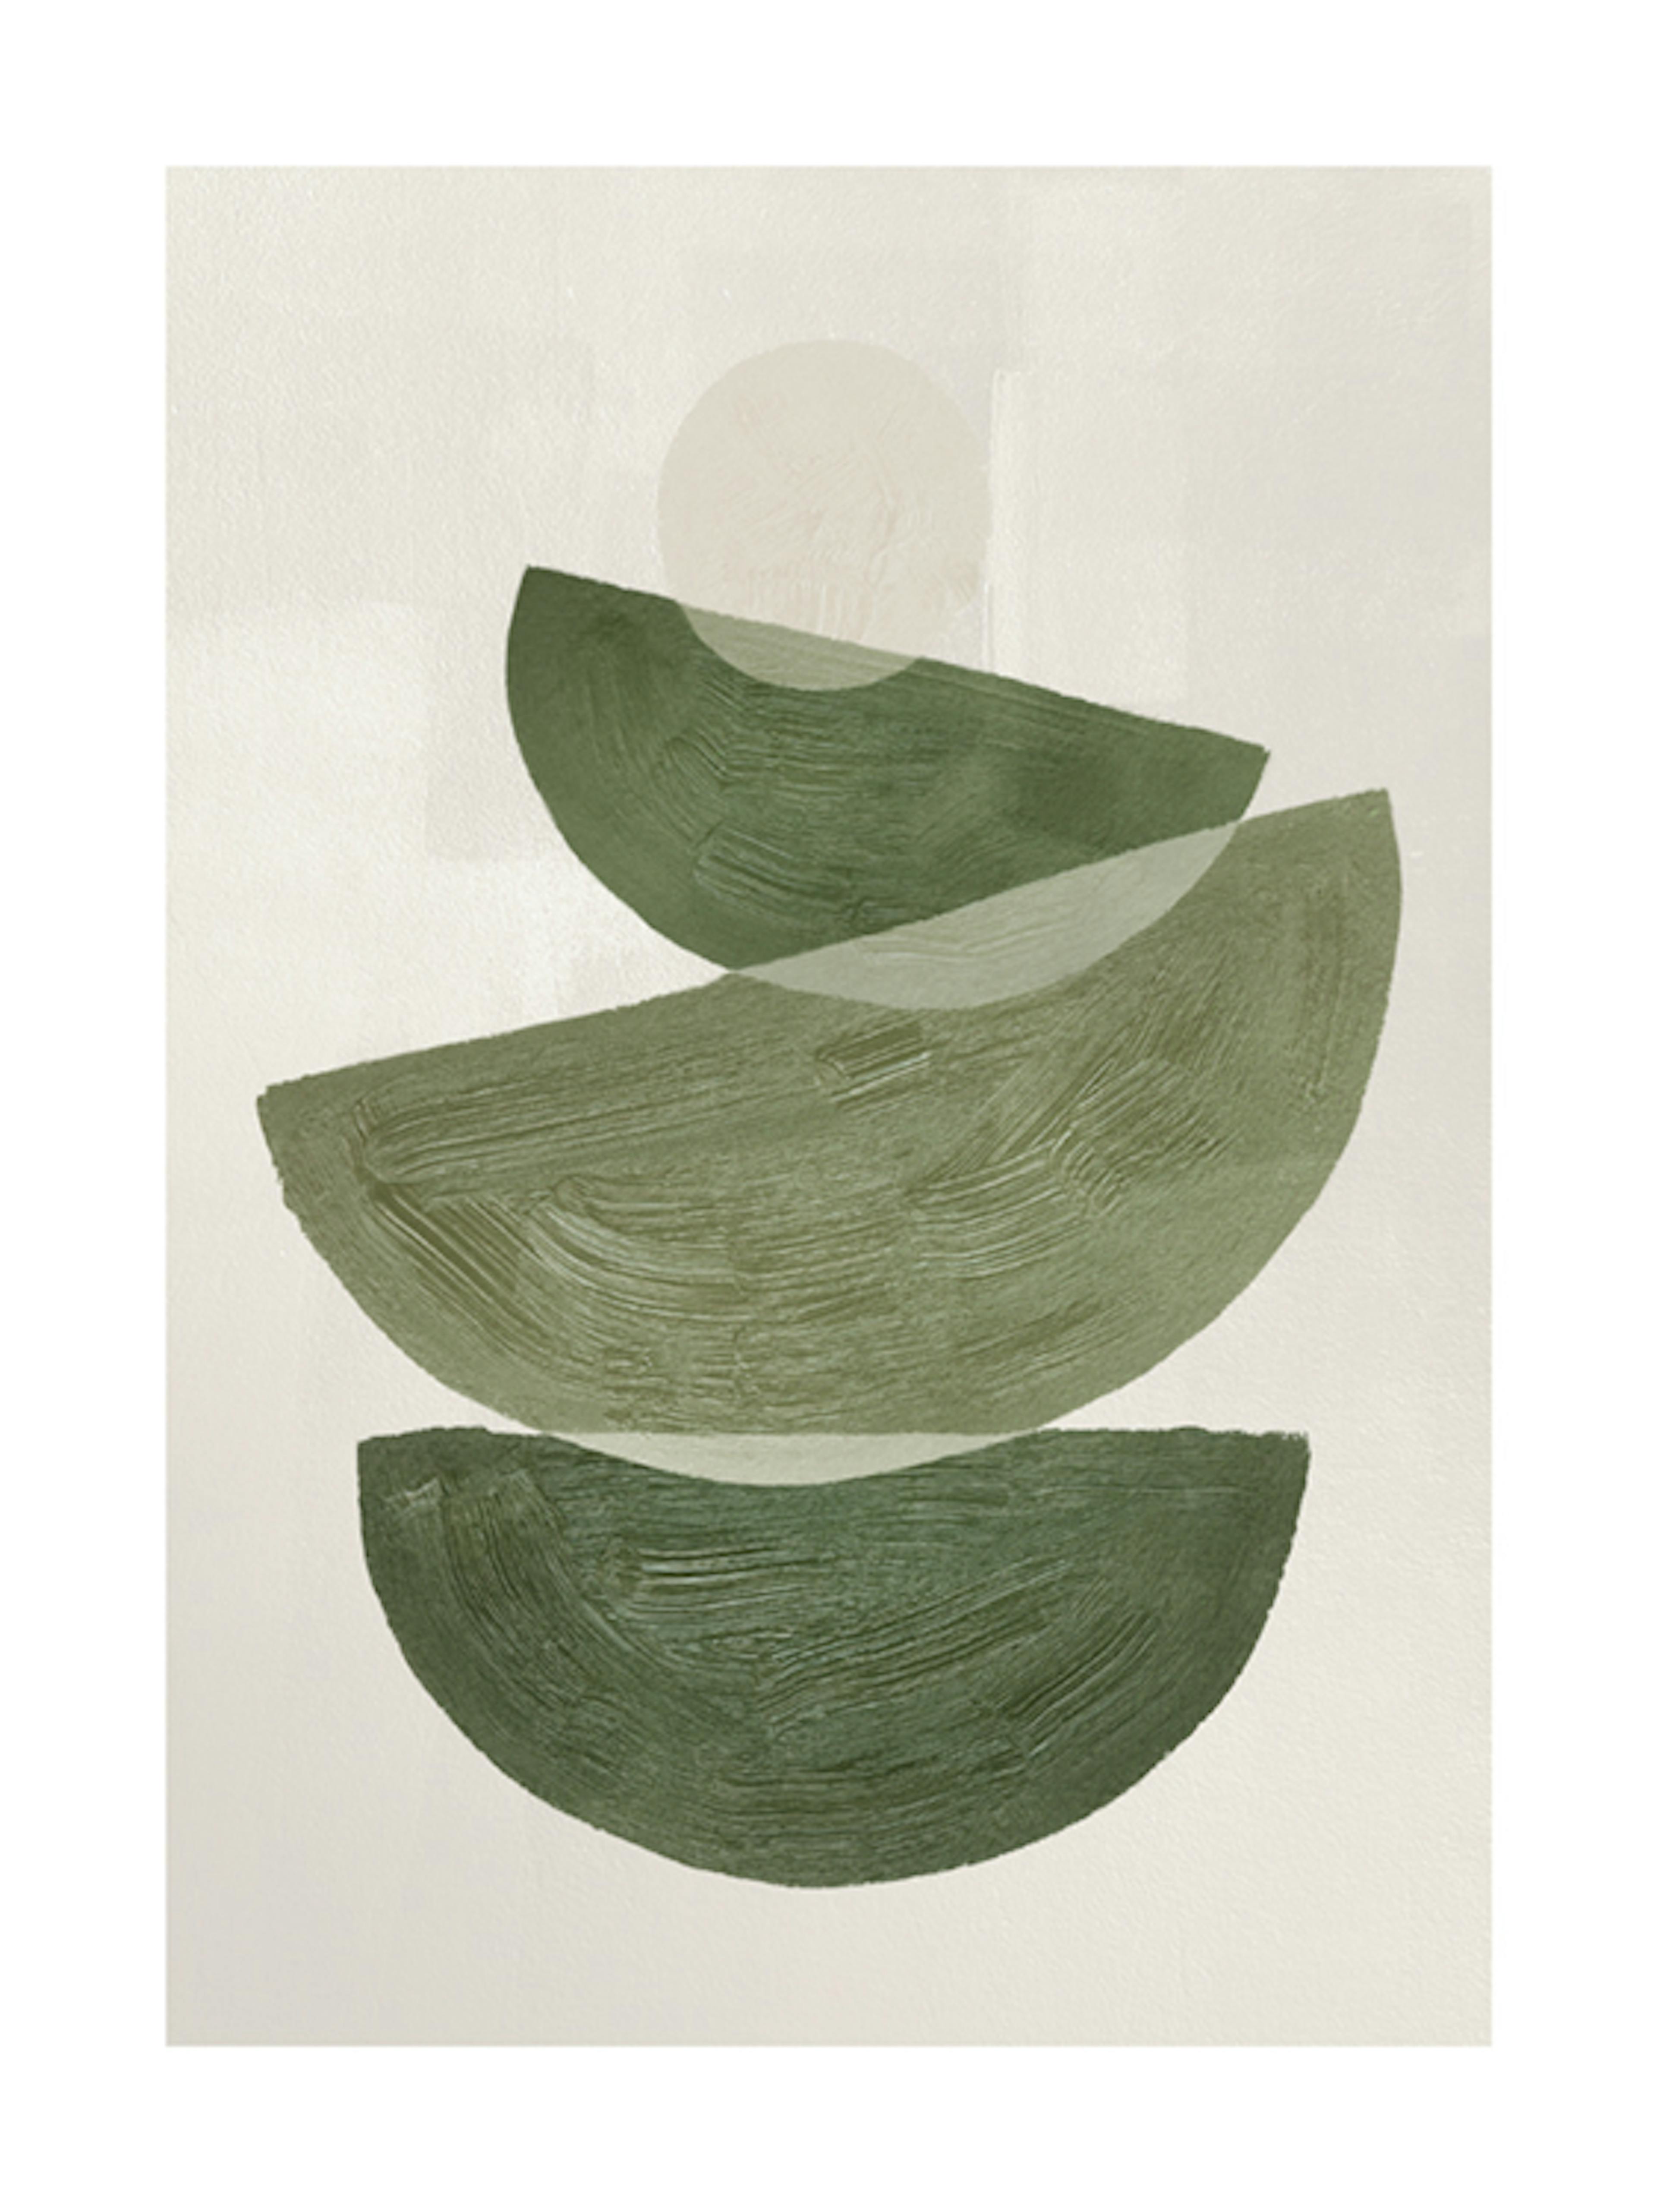 ملصق رسومي رقم 2 بأشكال خضراء 0